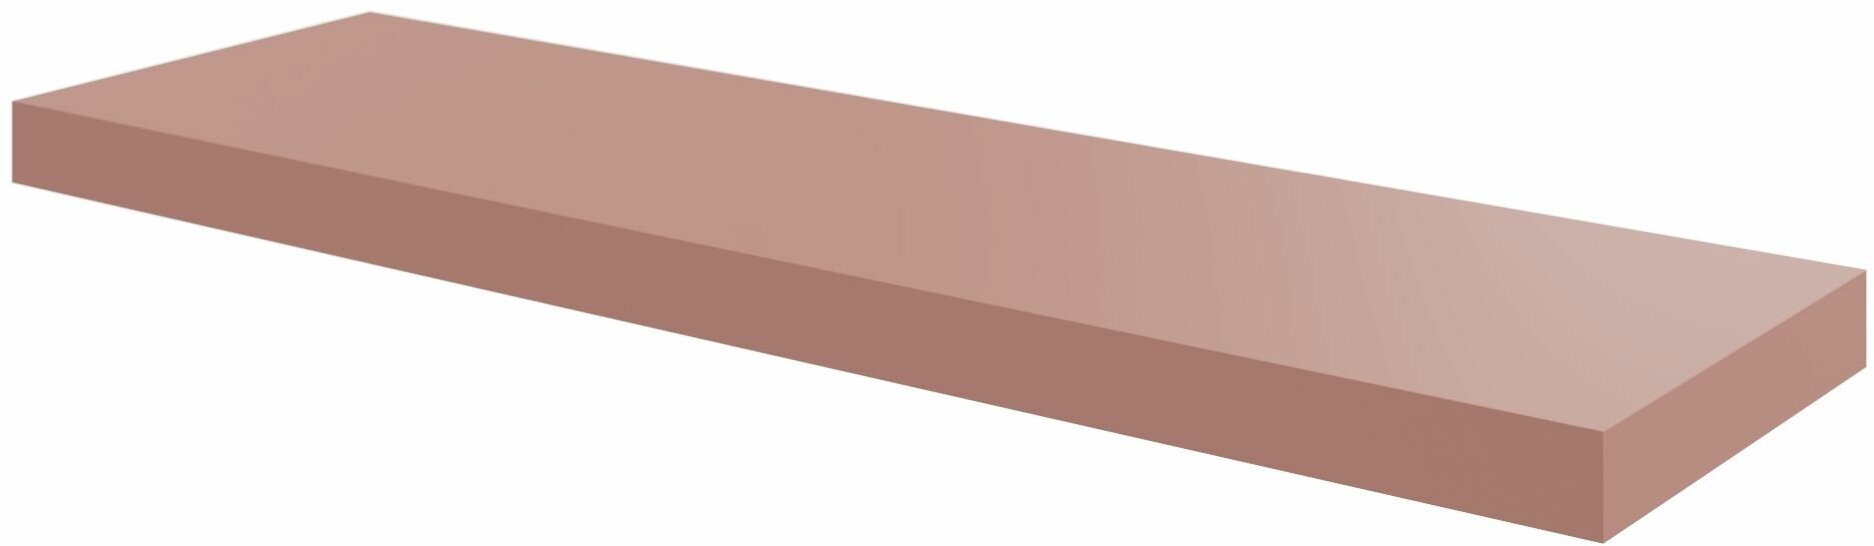 Полка мебельная Spaceo Bistro 80x23.5x3.8 см МДФ цвет розовый